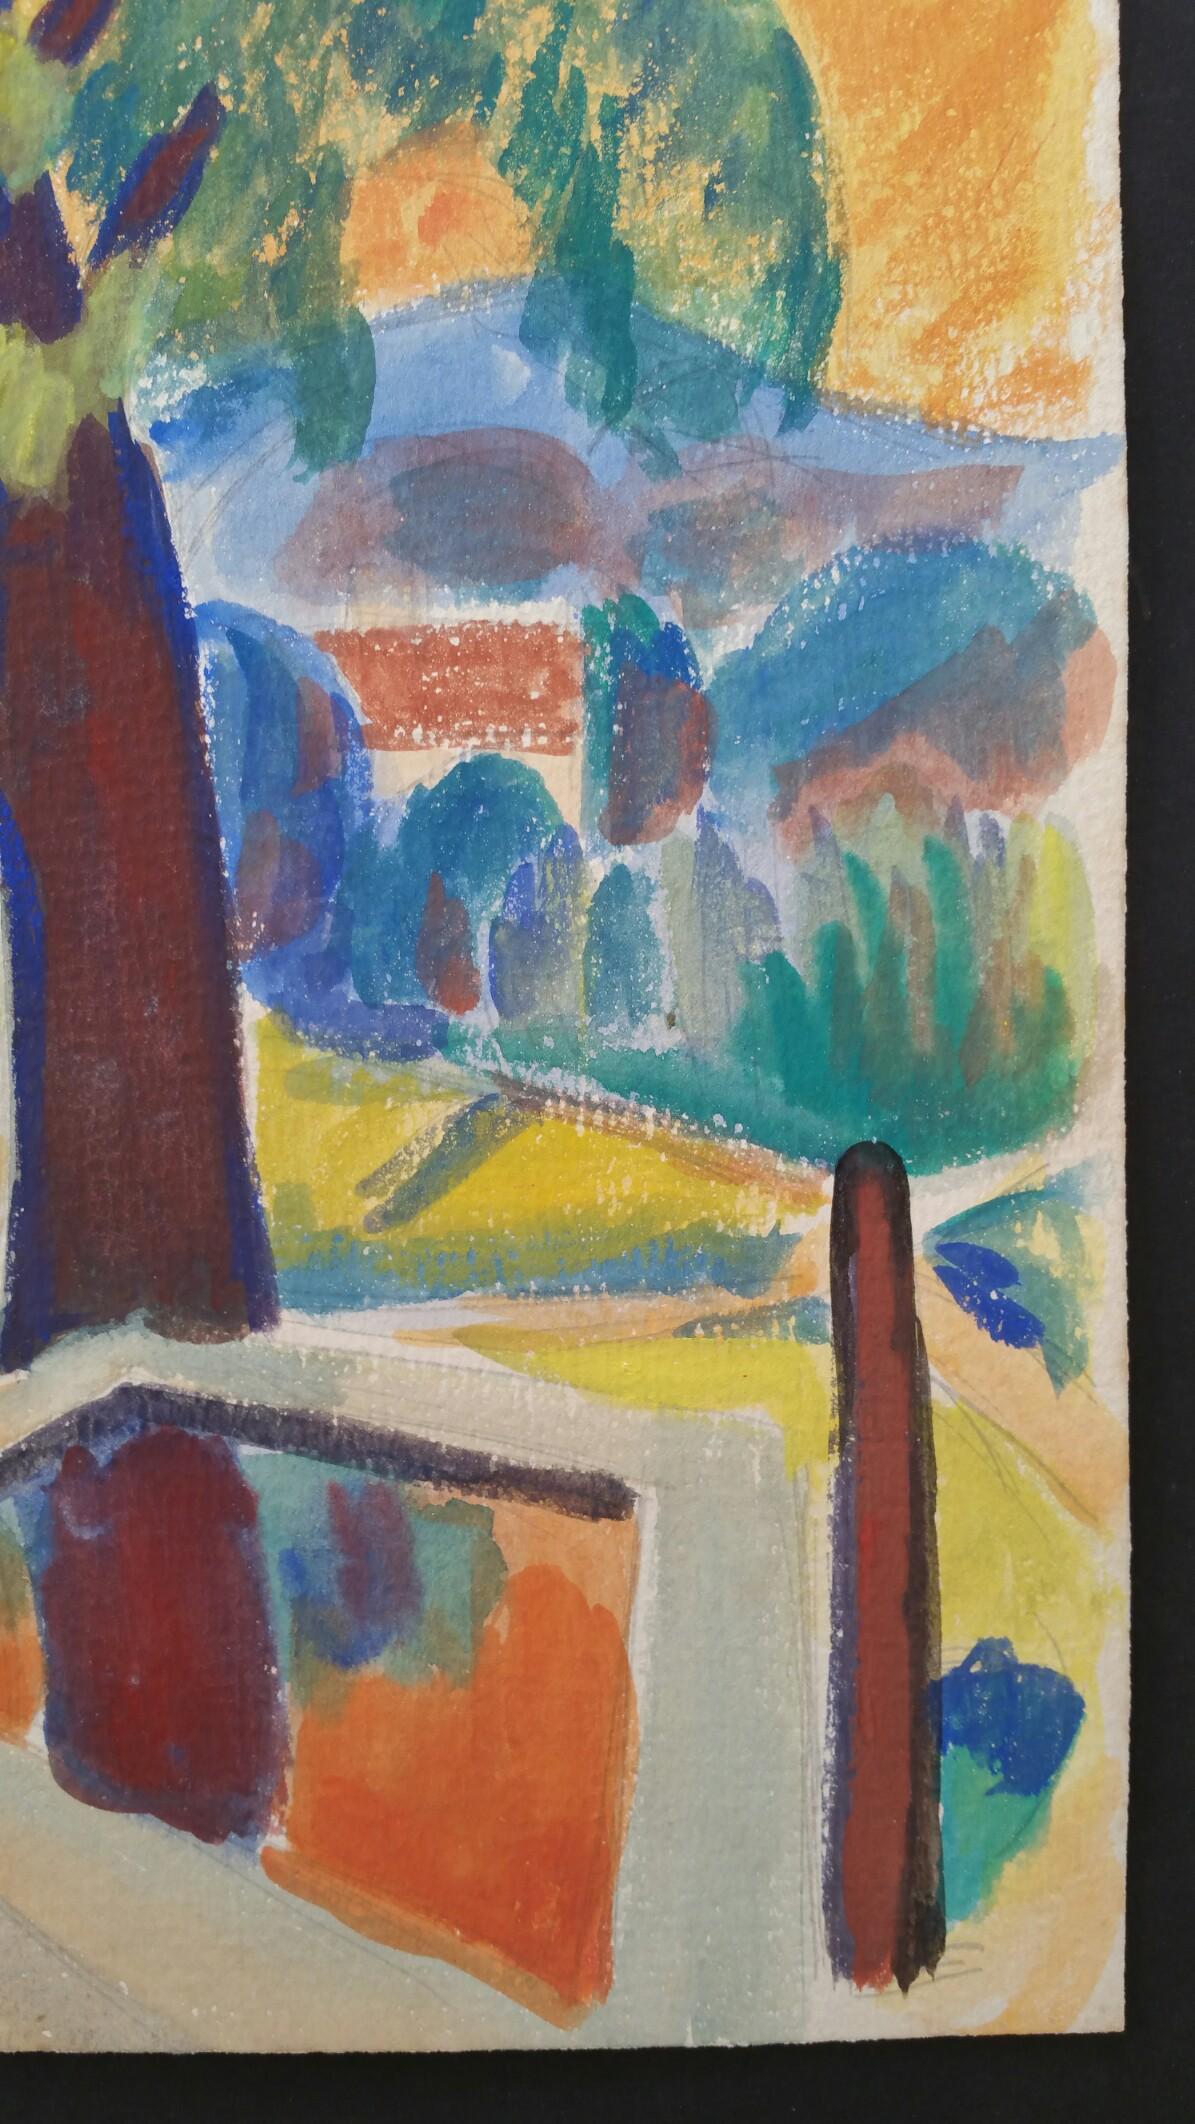 Paysage d'été en Provence, arbre du village contre le soleil d'été
par Louis Bellon (français 1908-1998)
Paraphé en bas à droite, daté 47 (1947)
peinture à l'aquarelle sur papier, non encadrée
mesures : 12 x 9.5 pouces

provenance : collection